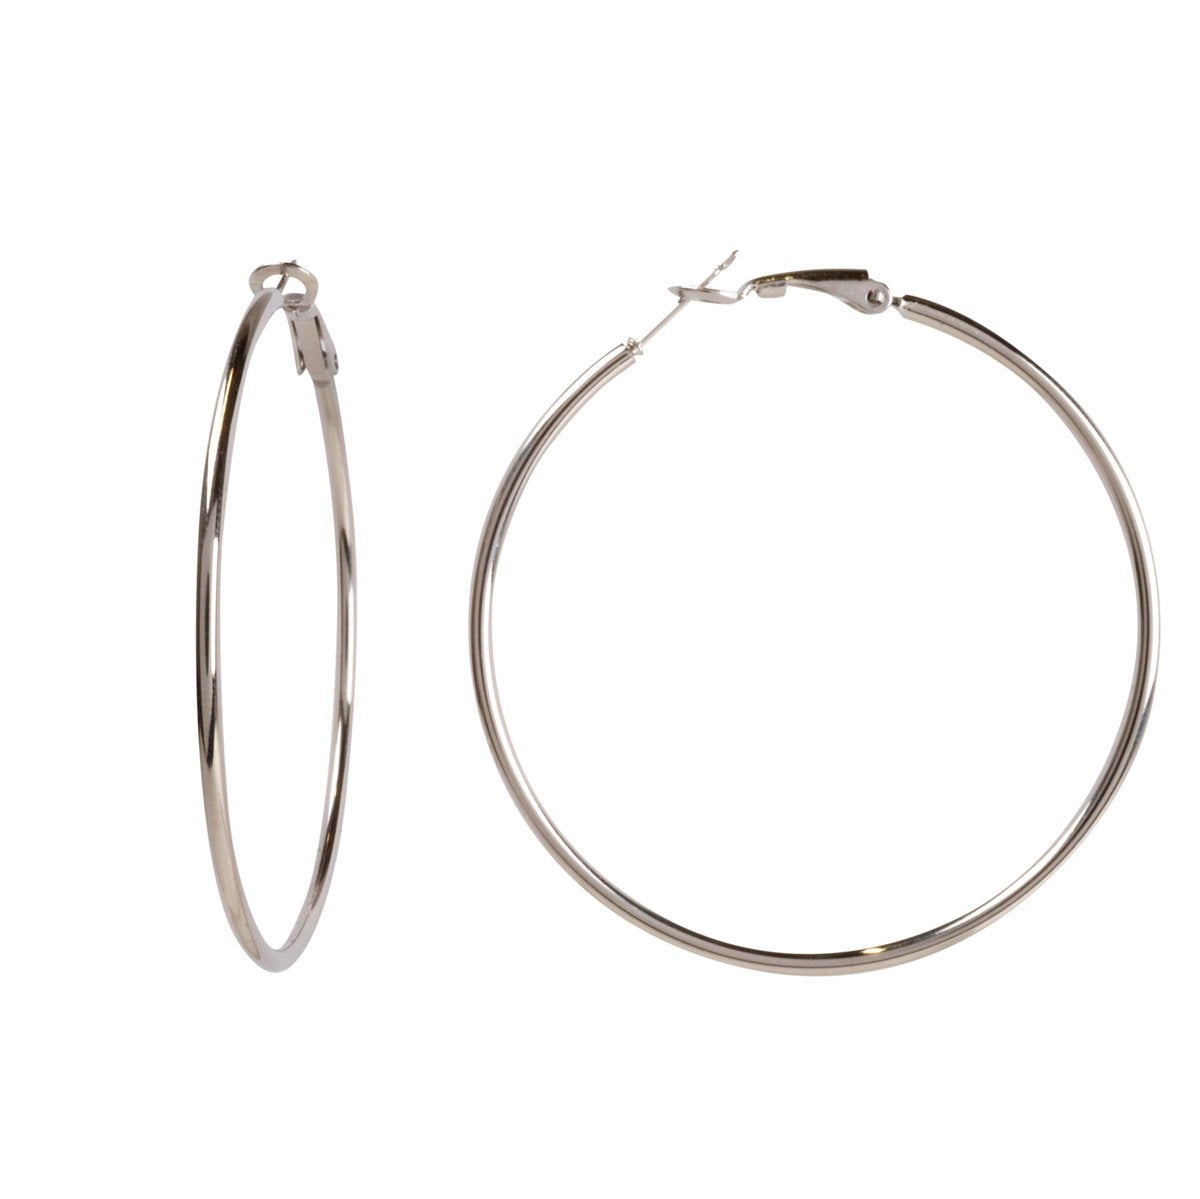 Steel earrings 6cm 2mm